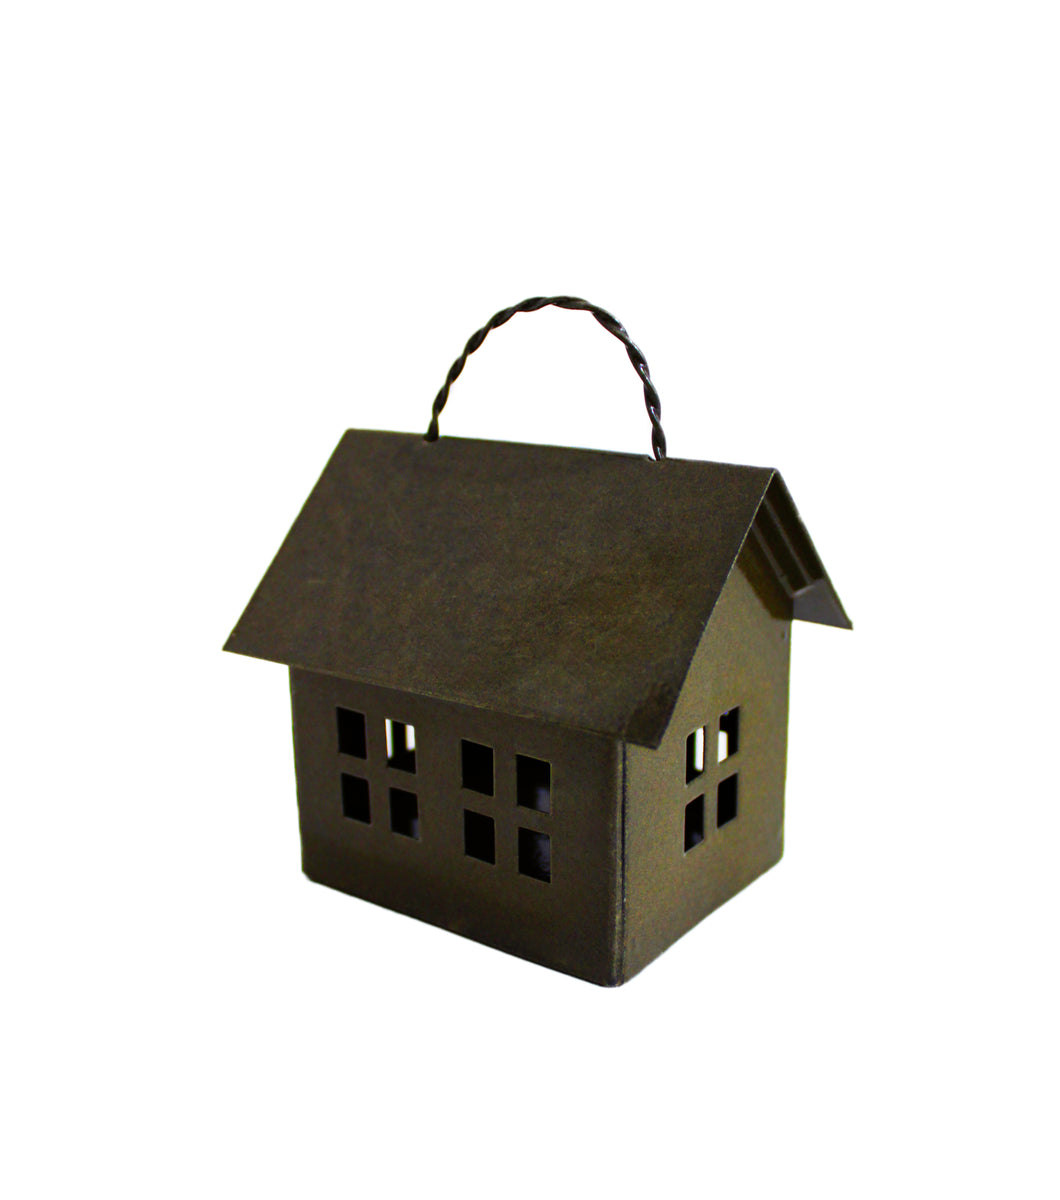 Metall Lichthäuschen mini mit Aufhängung, Höhe 7 cm, Breite 5 cm, Farbe Olive